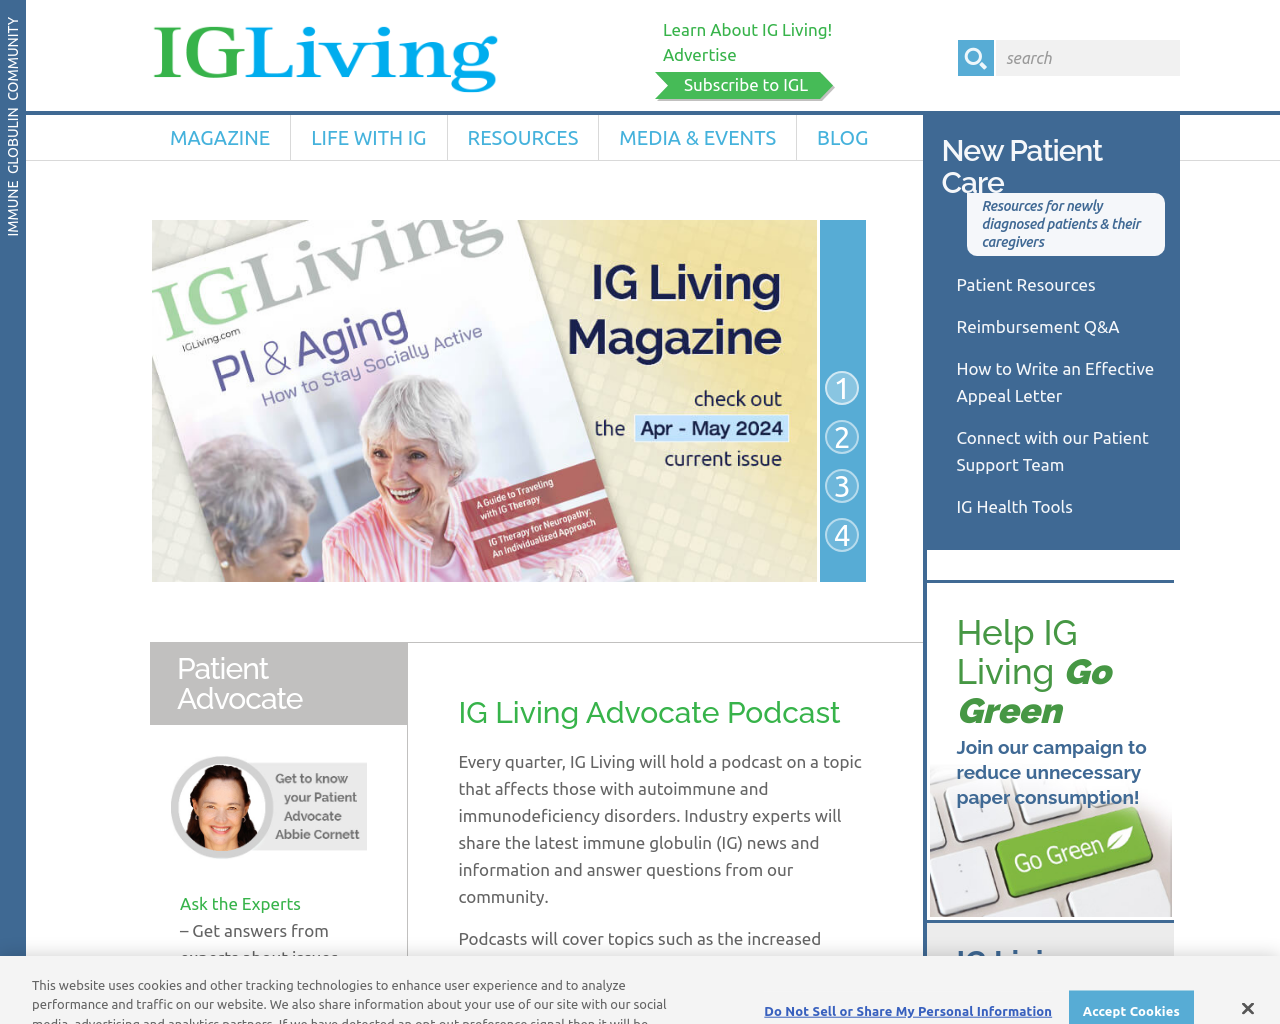 igliving.com